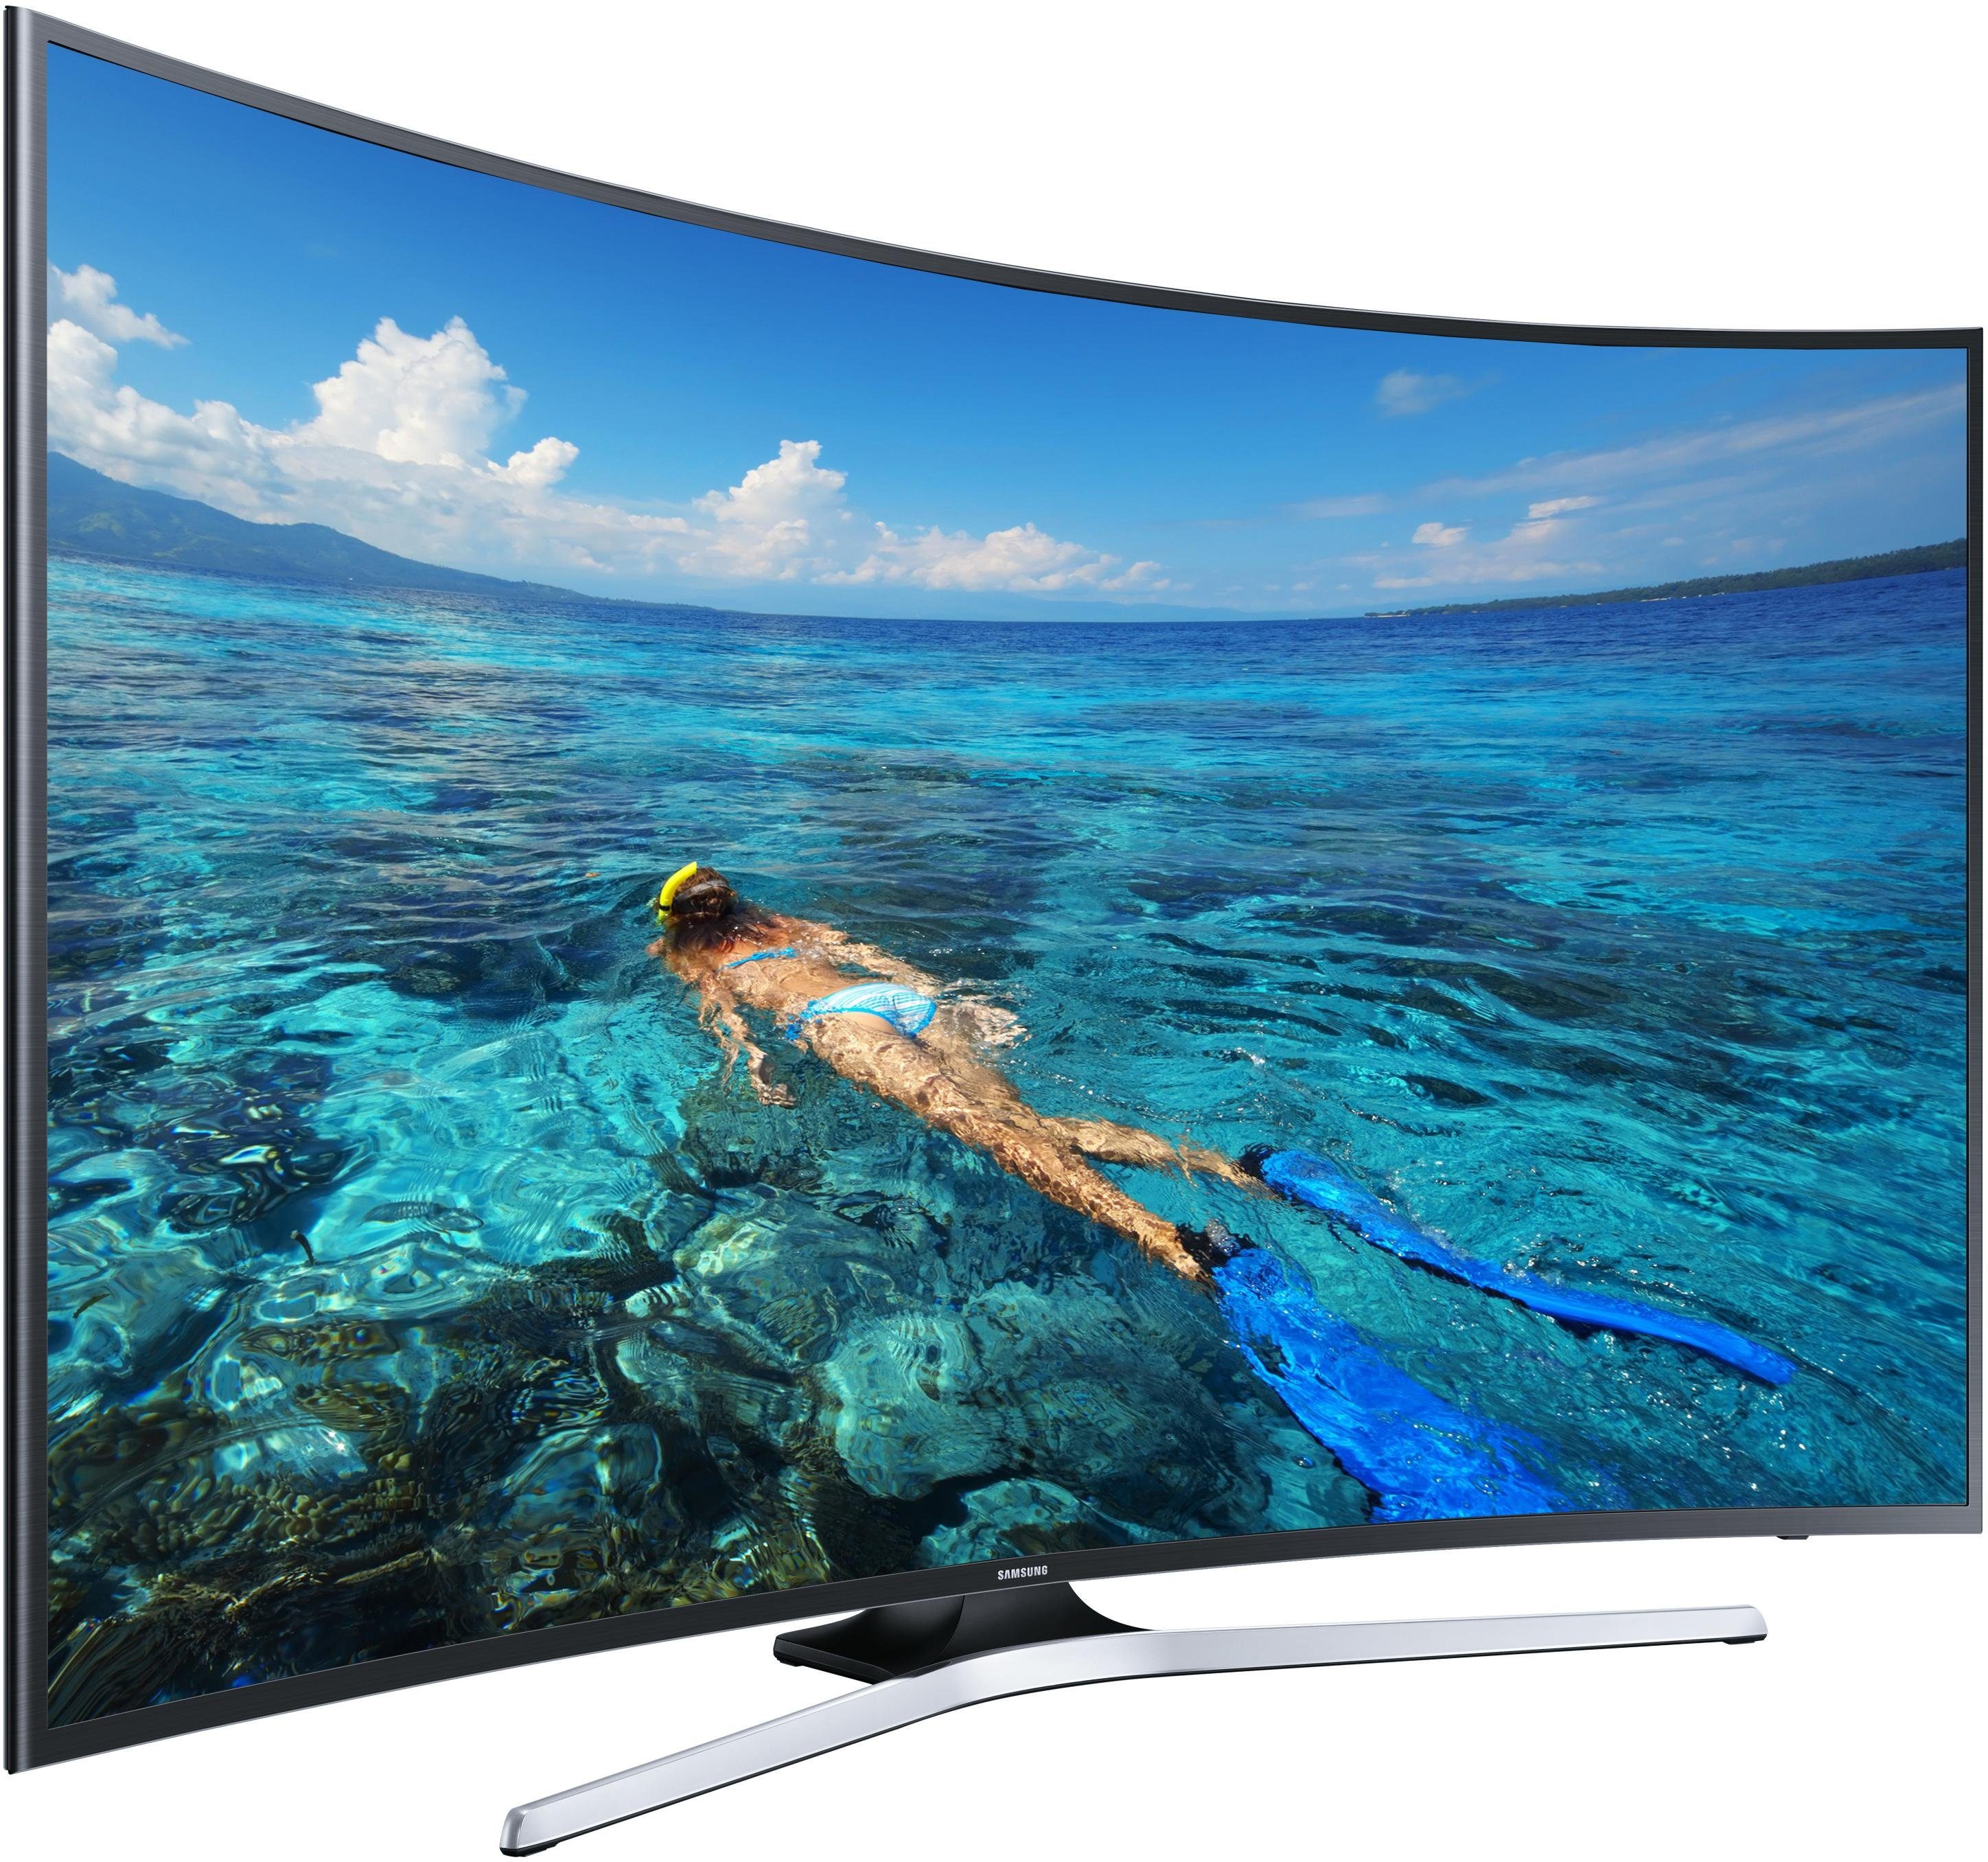 Телевизор самсунг цены отзывы. Телевизор самсунг 49 дюймов смарт. Телевизор самсунг изогнутый экран 49 дюймов.